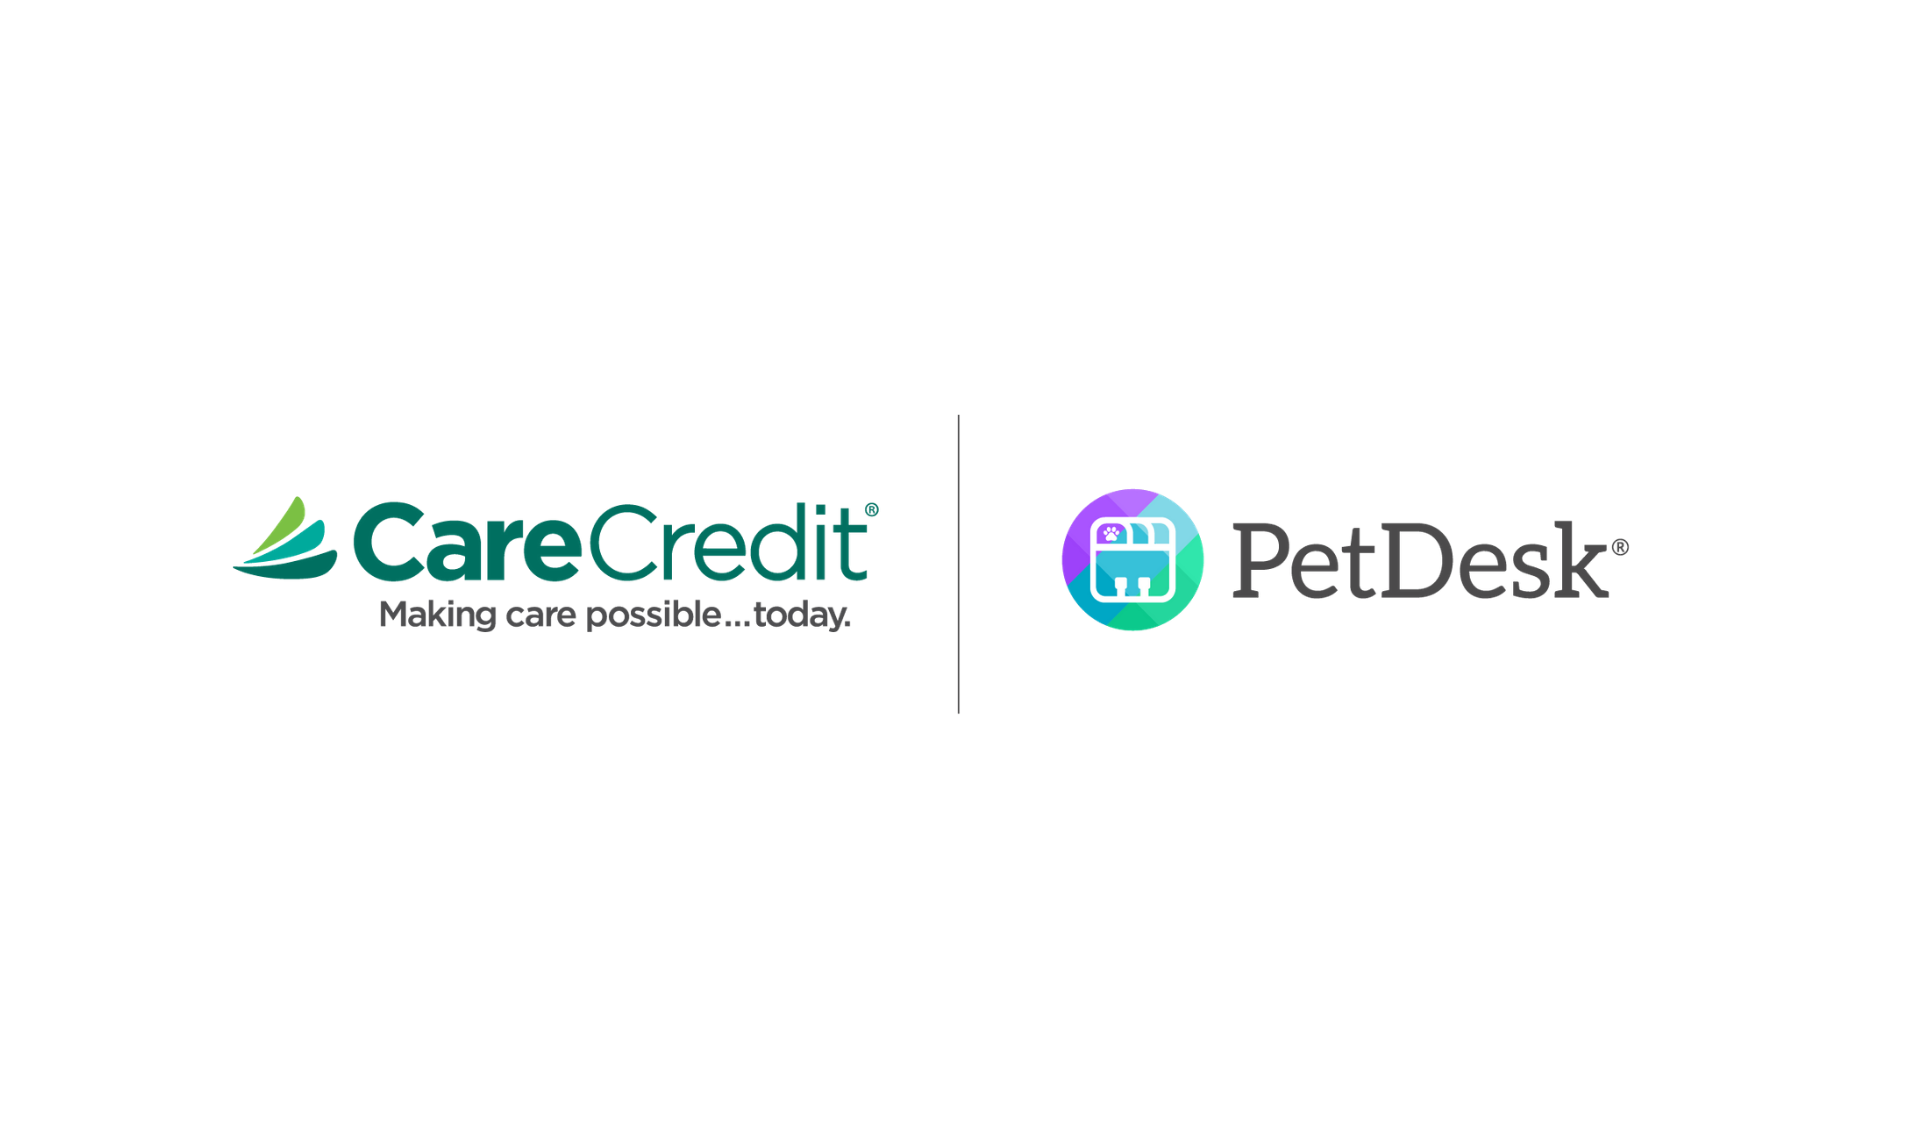 CareCredit and PetDesk Logos